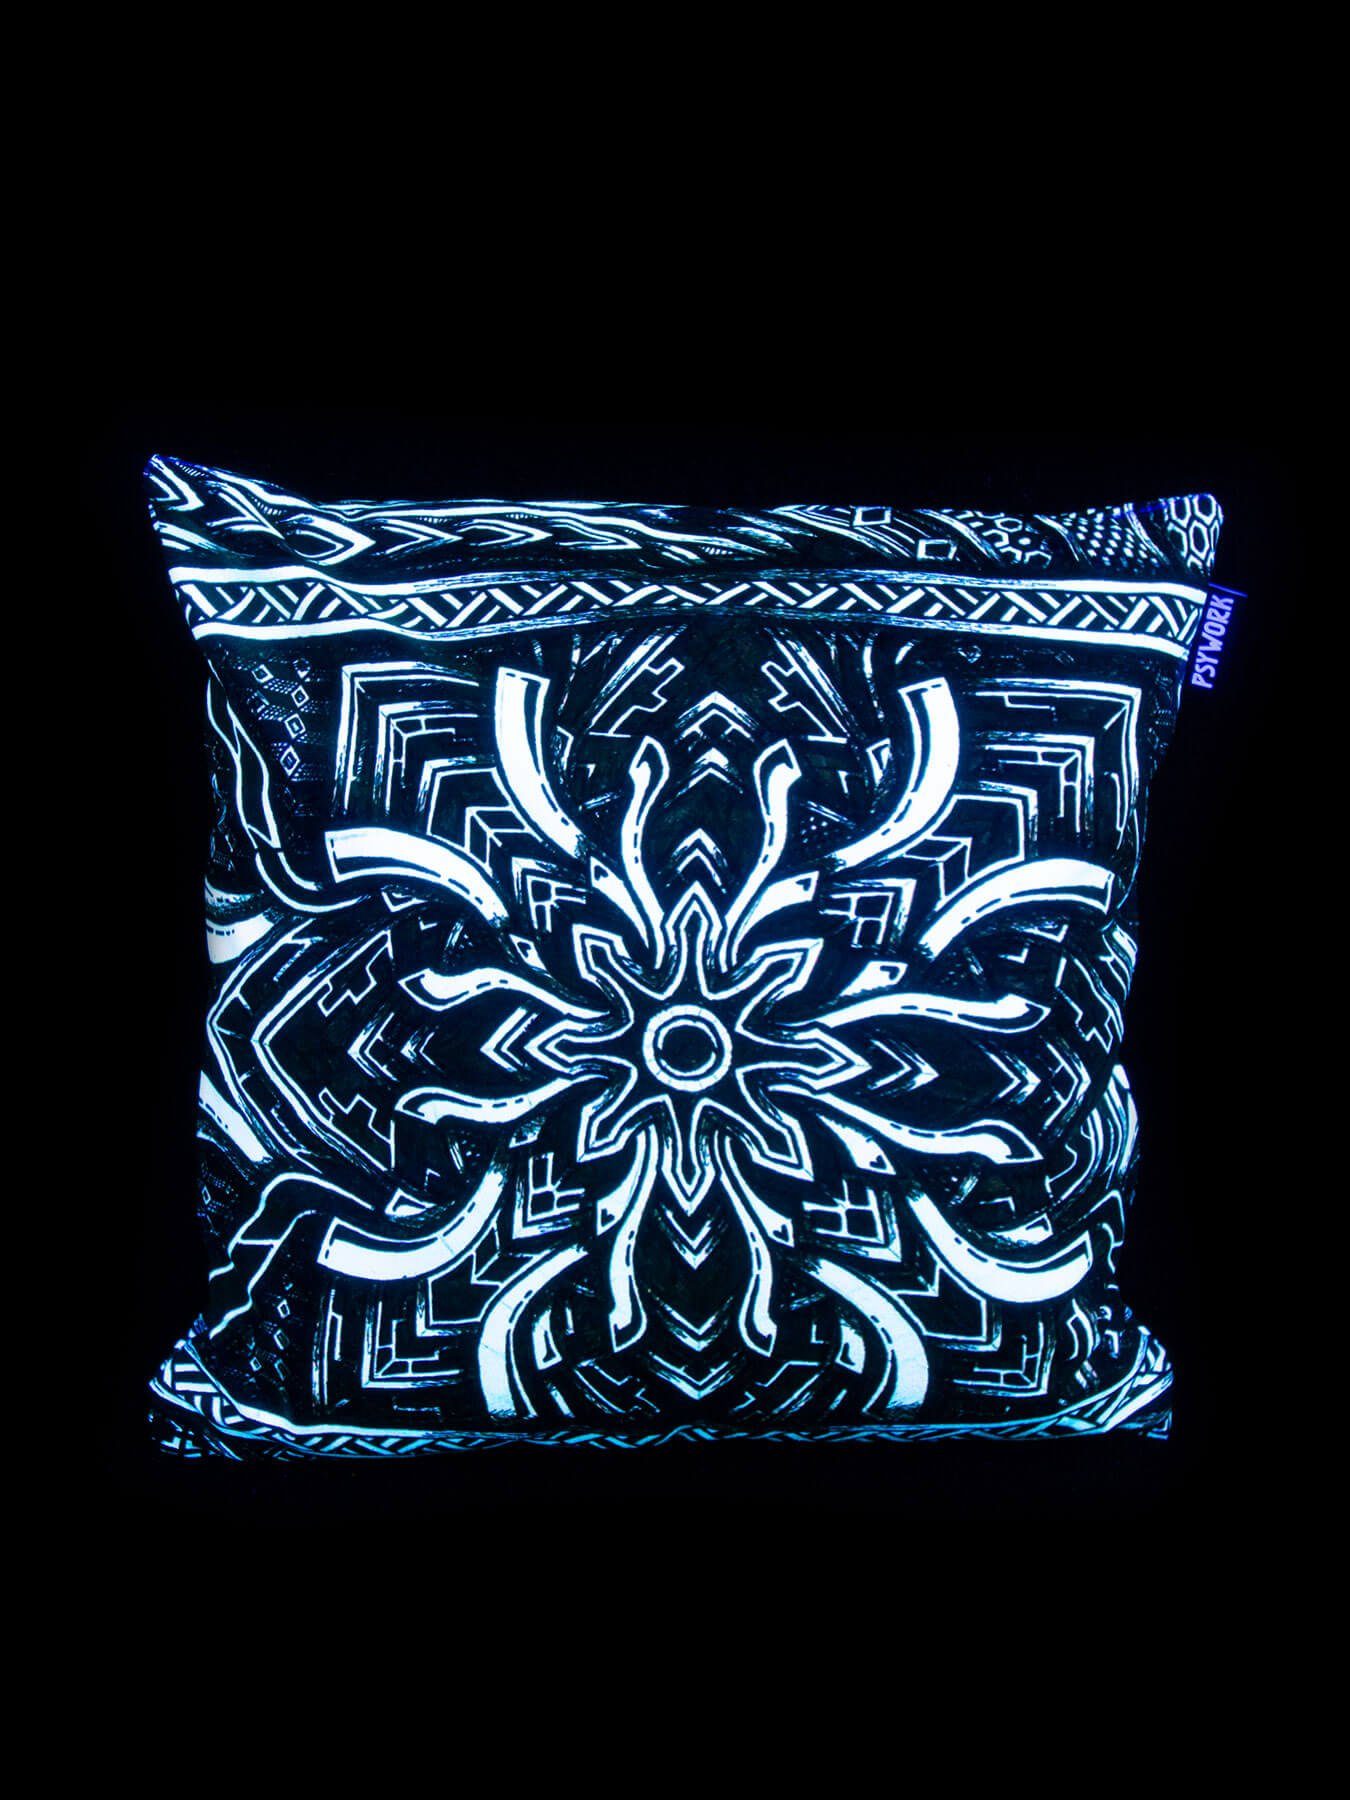 Schwarzlicht Dekokissen Neon unter PSYWORK leuchtet PSYWORK Kissen Portal", 40x40cm, "Dark Schwarzlicht UV-aktiv,